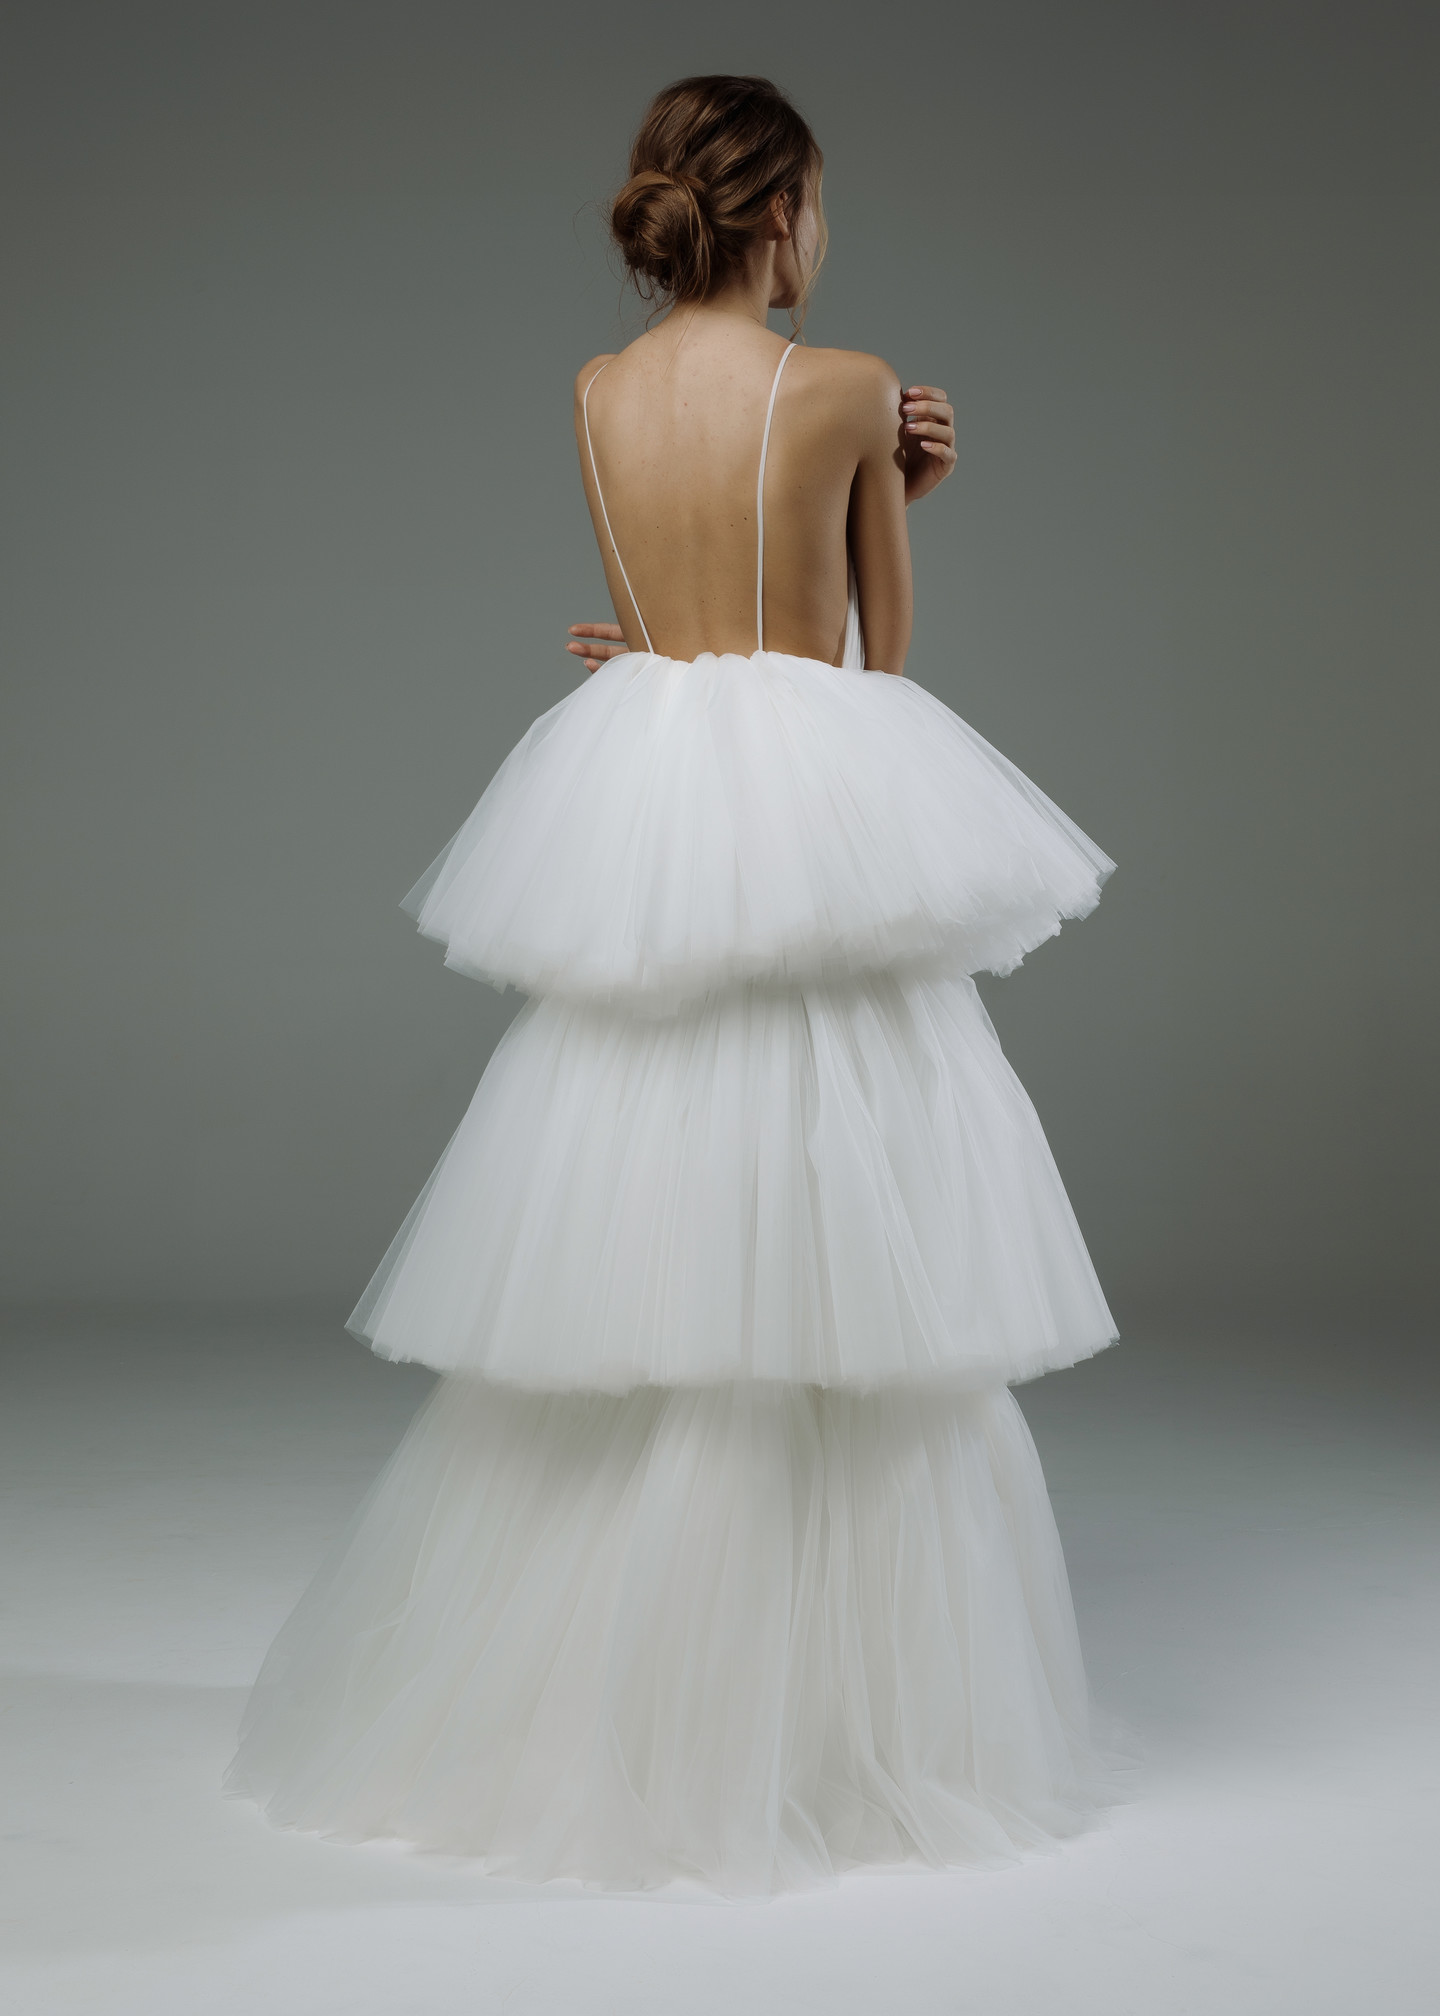 Платье Элайн, 2019, одежда, платье, свадебное, молочно-белый, кружево, А-силуэт, сетка, архив